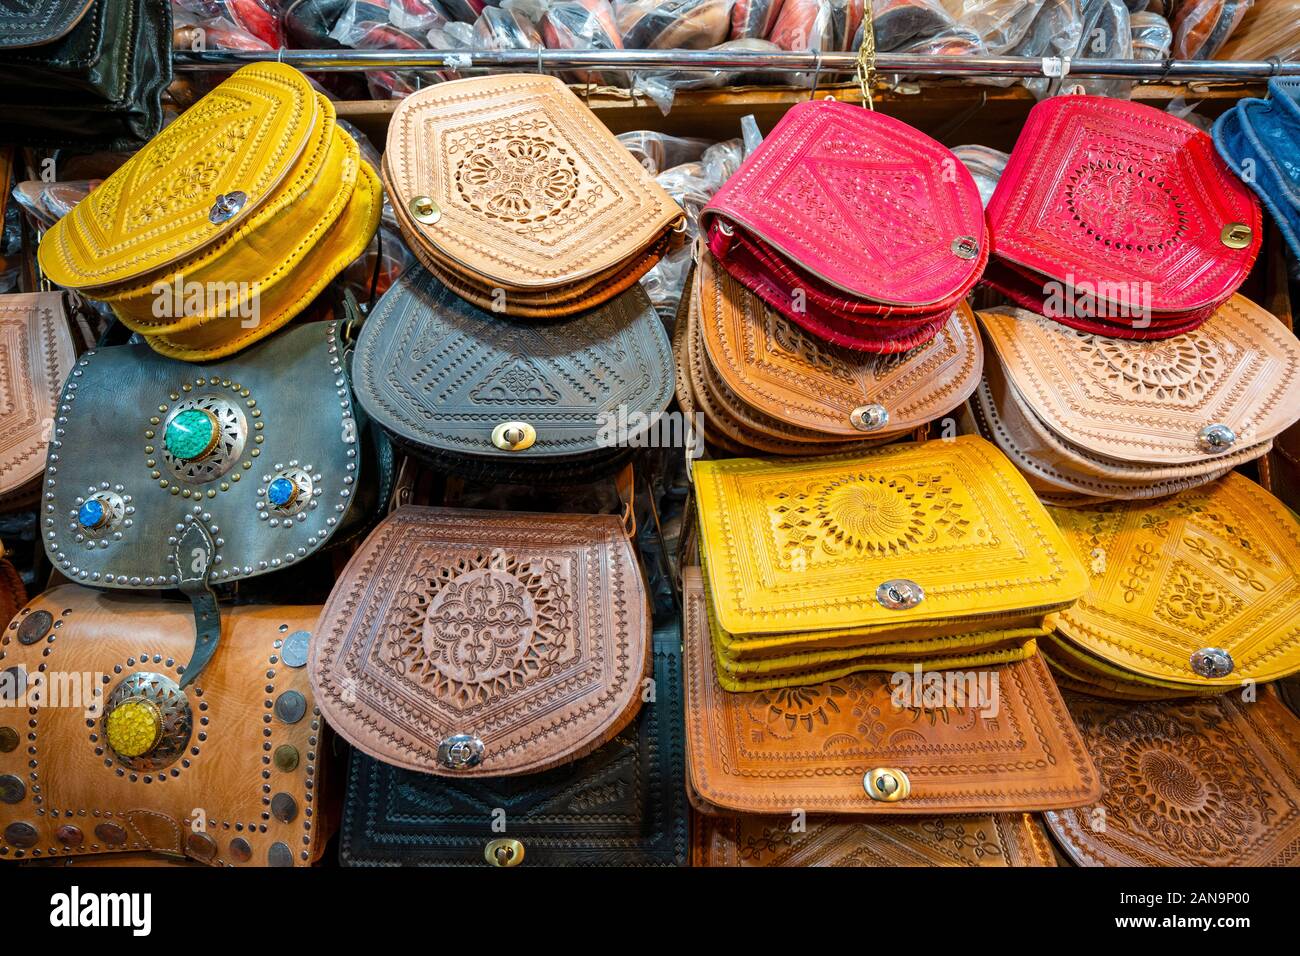 Farbenfrohe handgefertigte Ledertaschen in der Altstadt von Marrakesch, Marokko verkauft Stockfoto